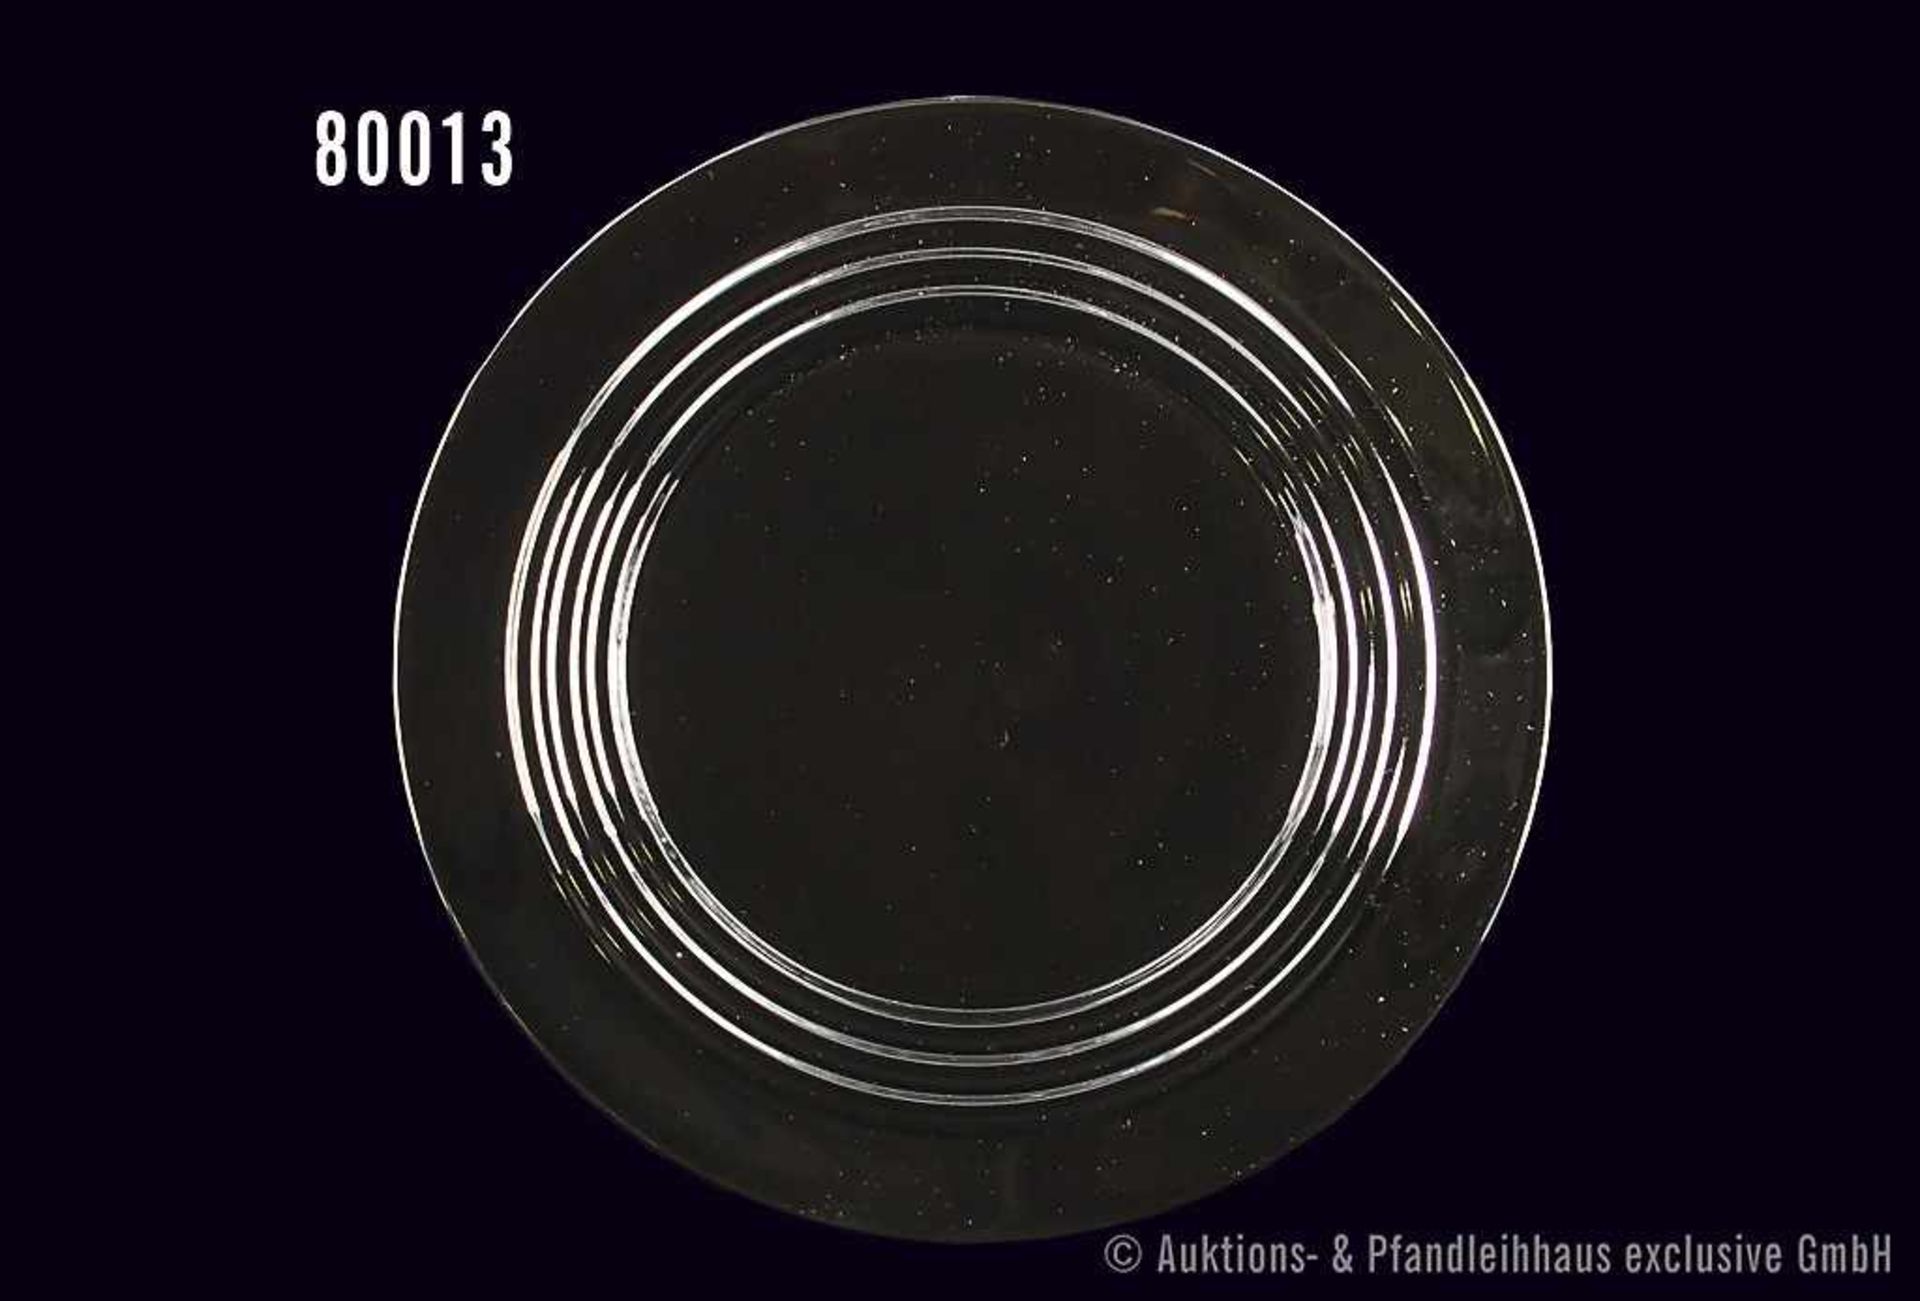 Konv. Rosenthal Porzellan, 6 Platzteller Cupola schwarz/weiß, Design Mario Bellini, alle Teller